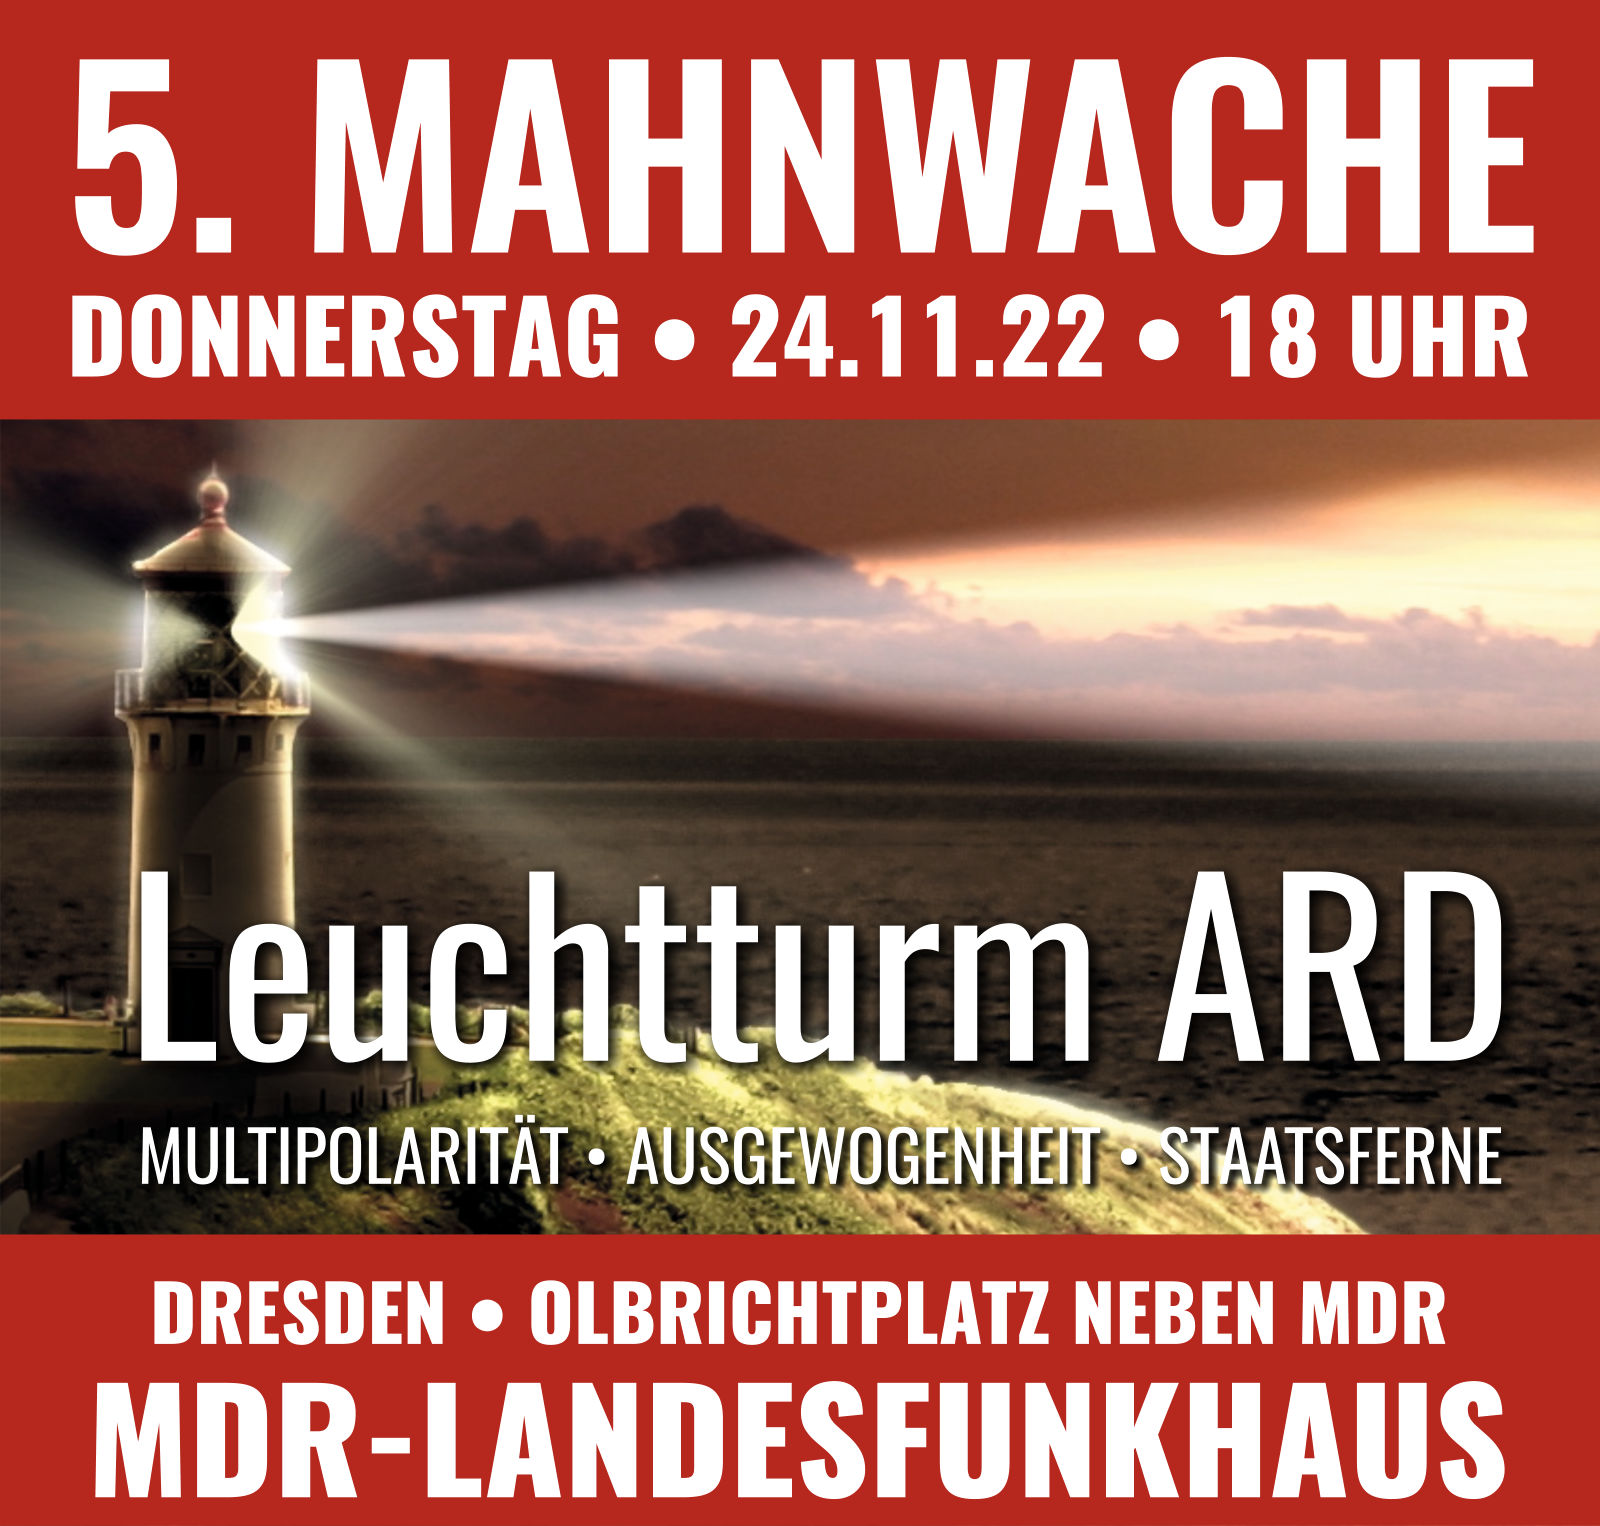 5. Mahnwache Leuchtturm ARD